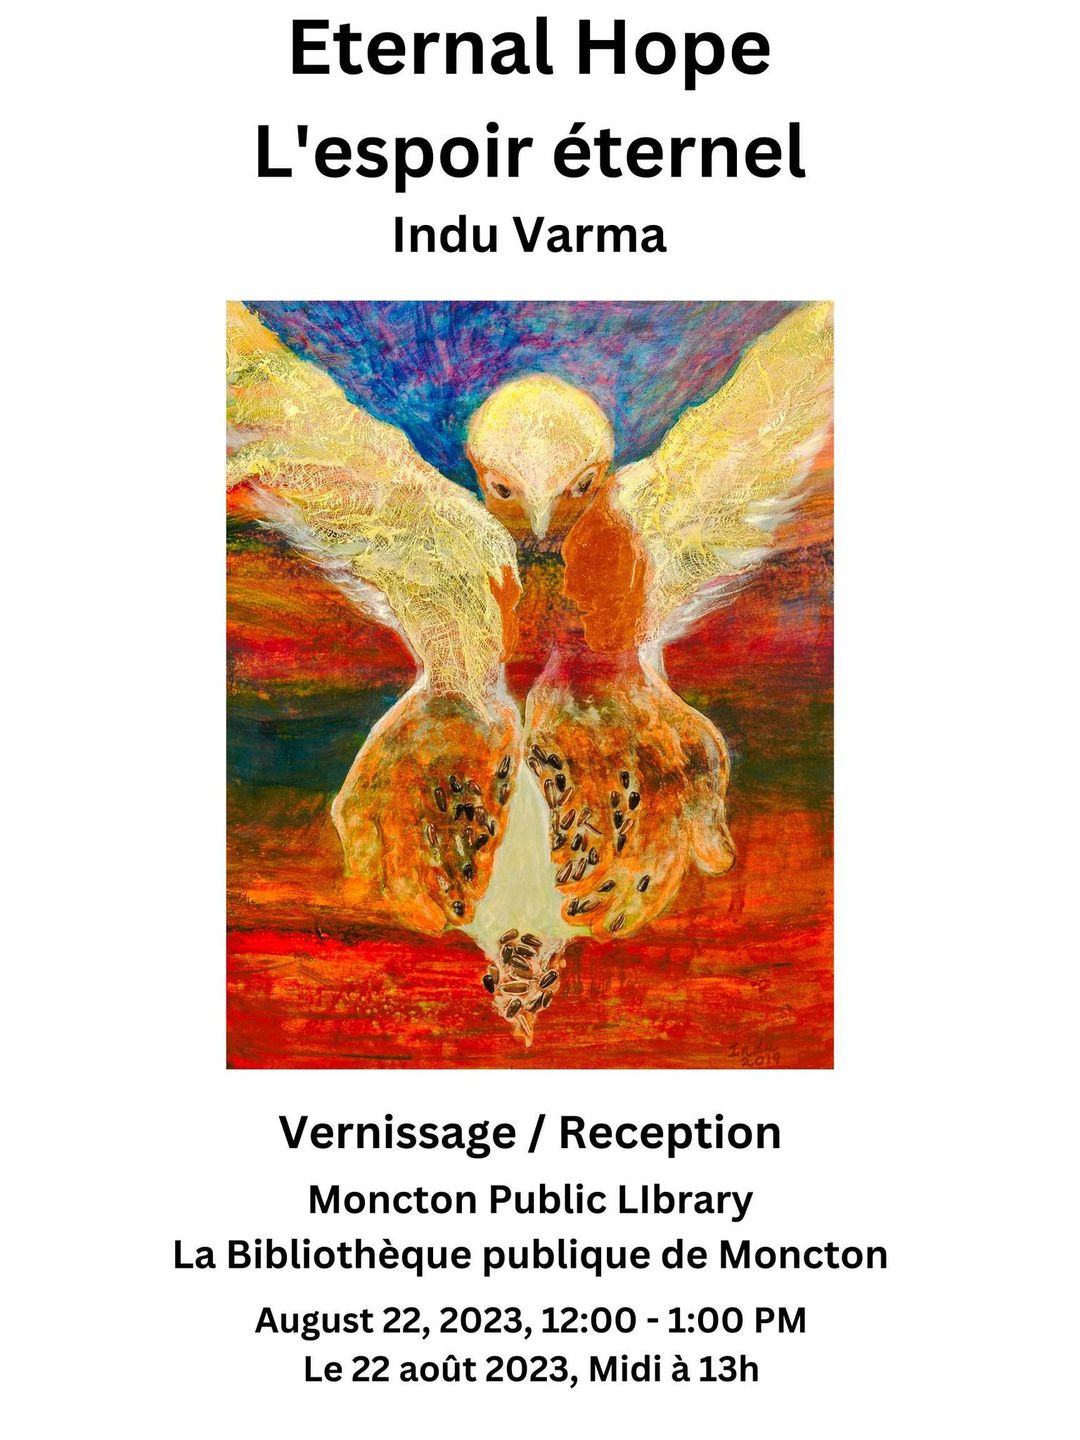 Eternal Hope by Indu Varma